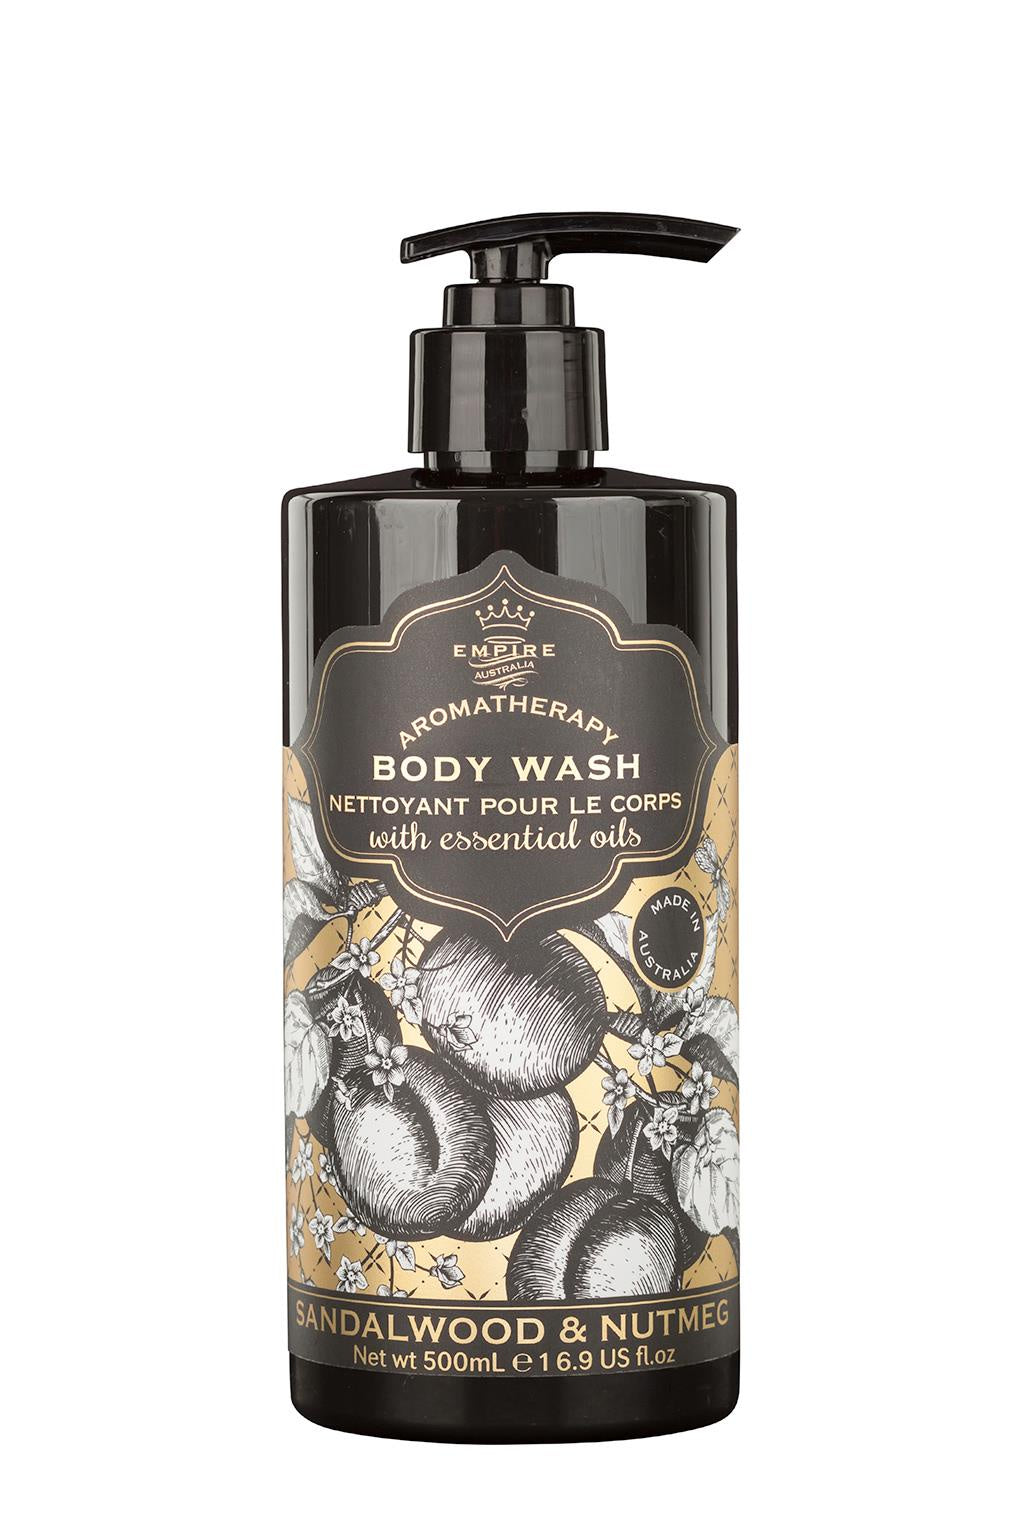 Empire Sandalwood & Nutmeg Body Wash